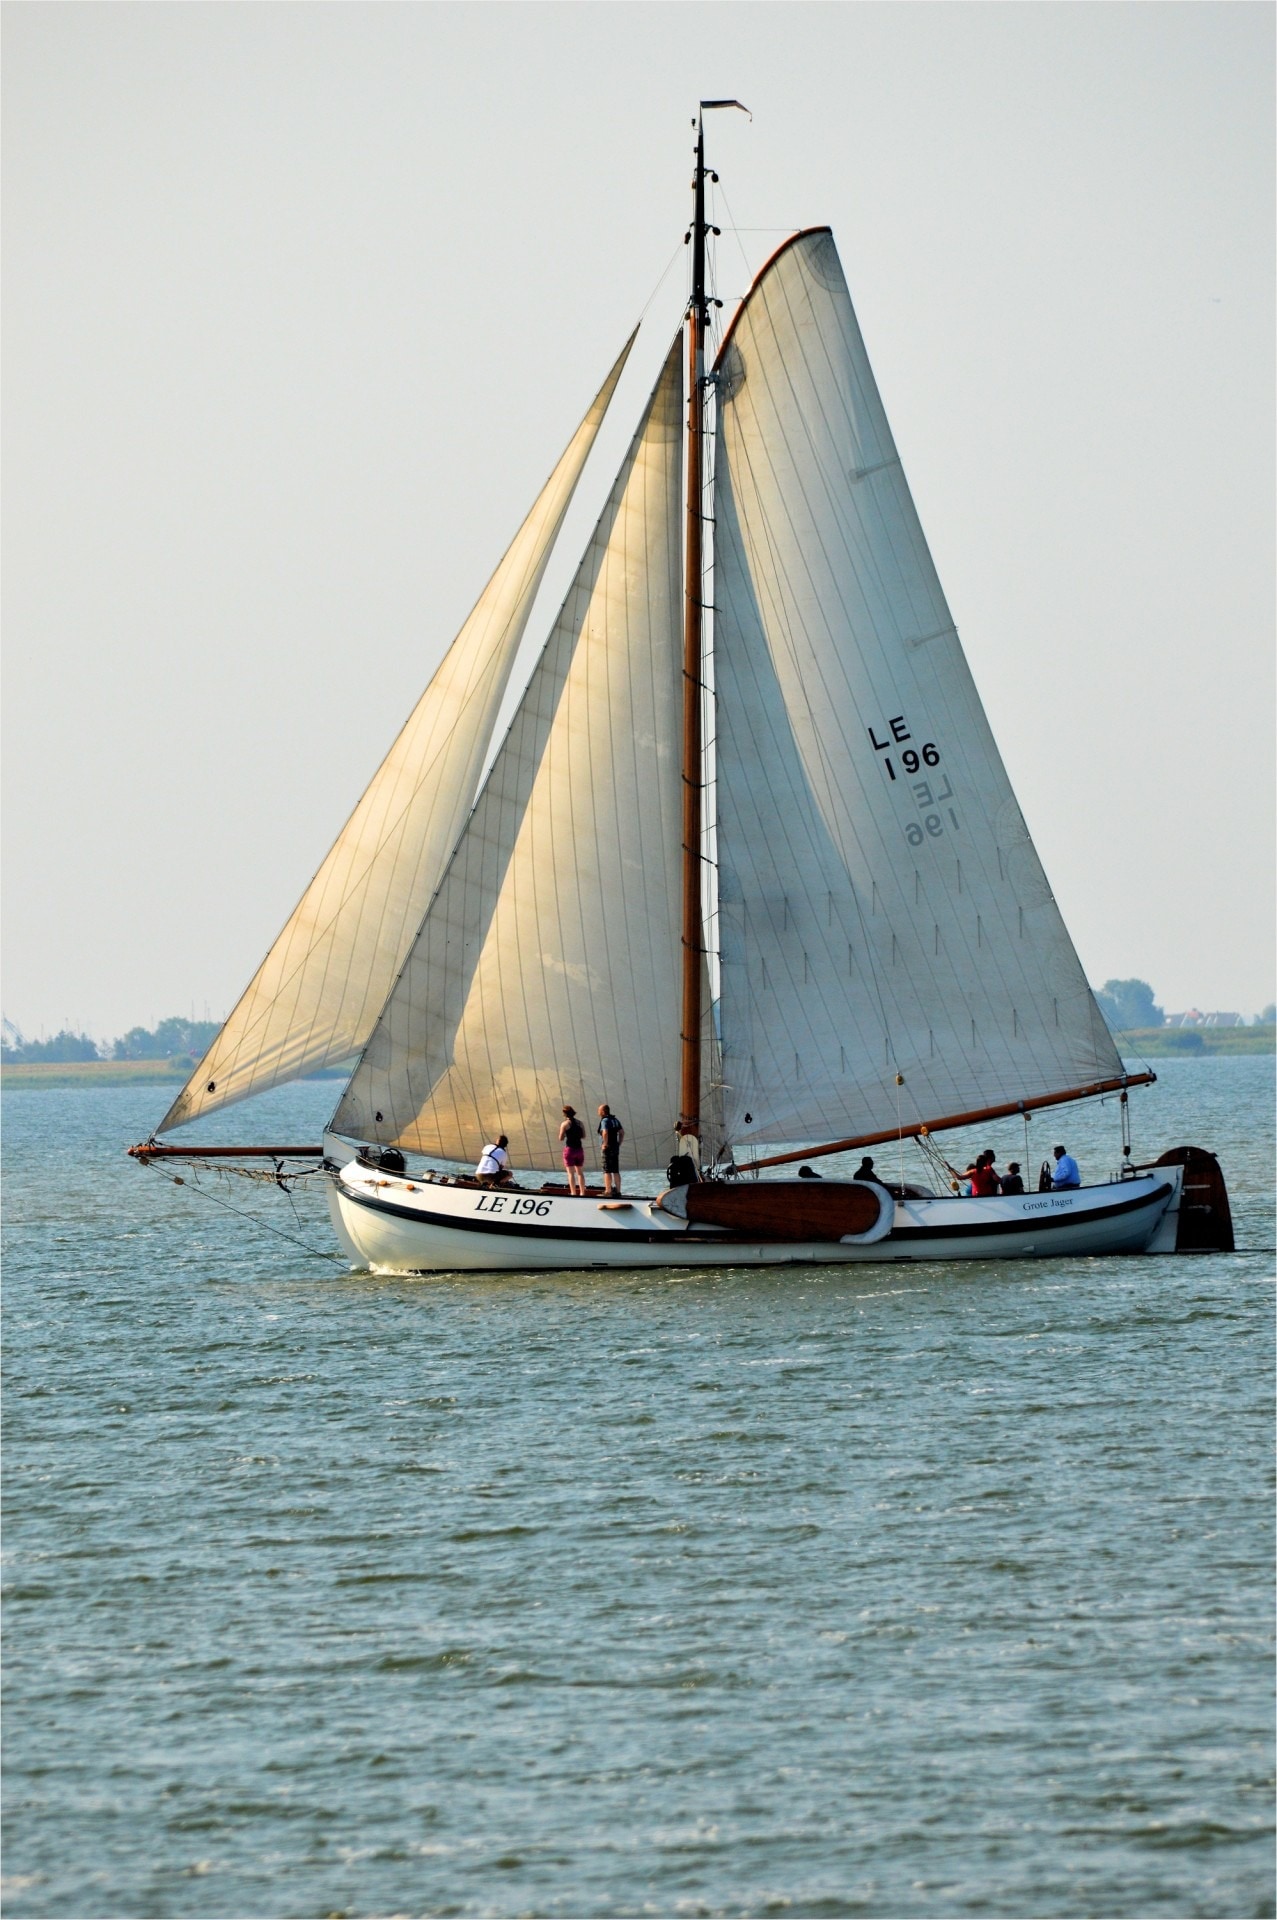 white sailboat